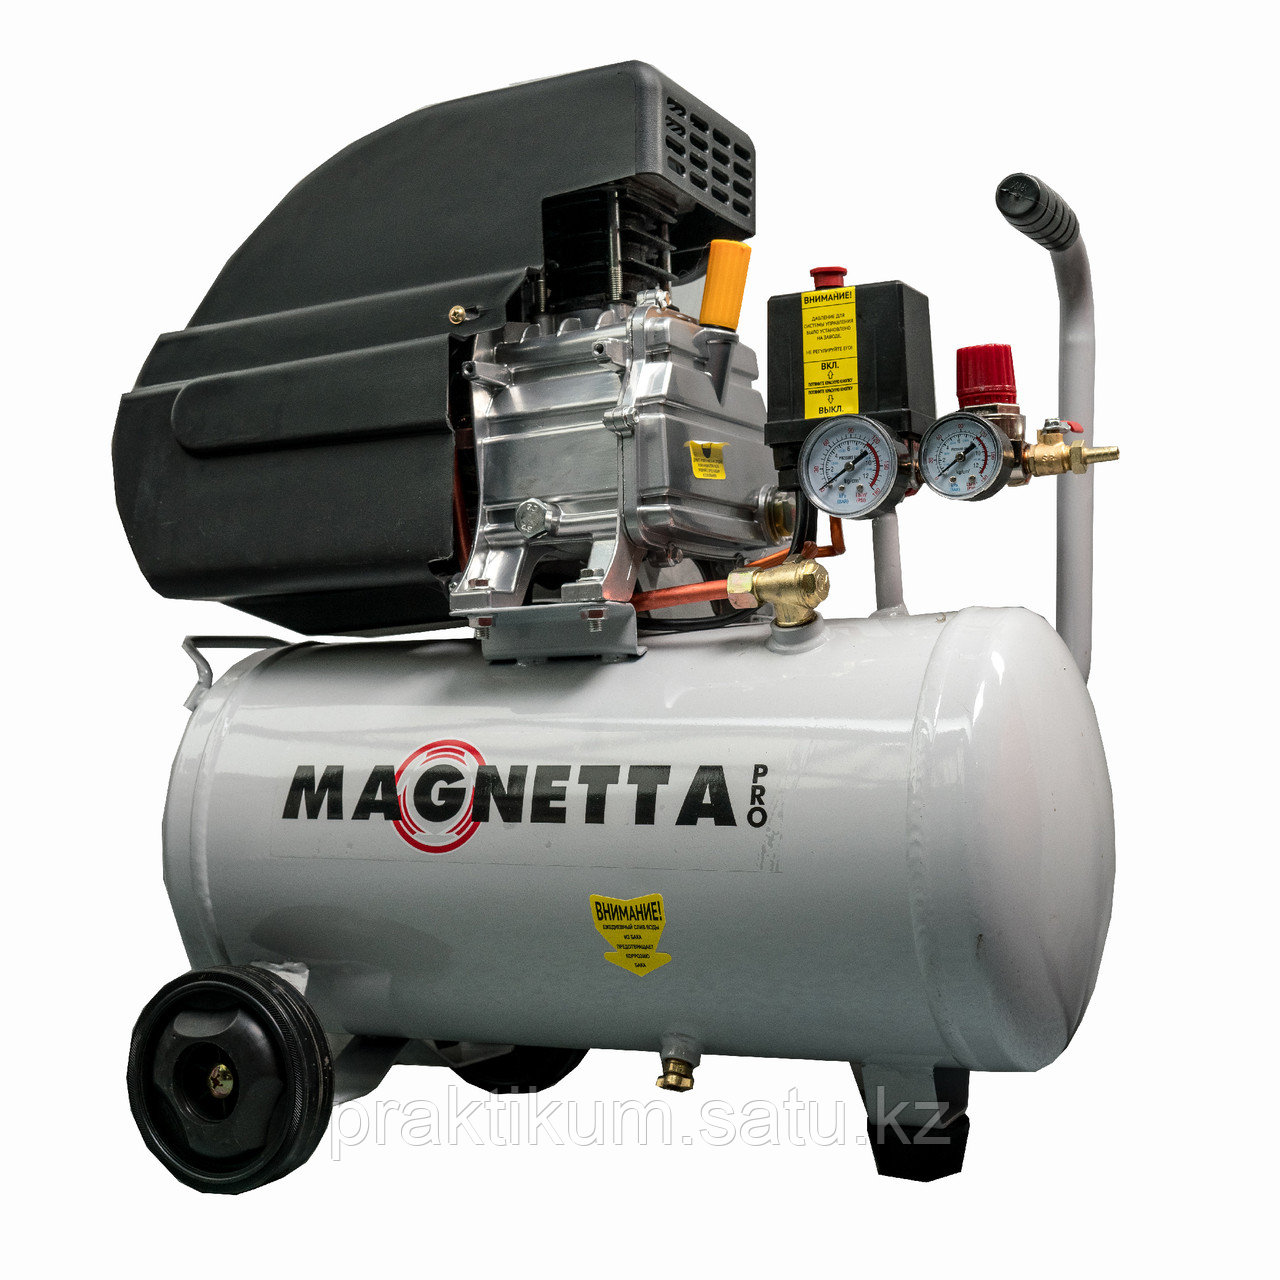 CE624 Magnetta Компрессор 158 л/мин, 1,1 кВт, 220В, 8 атм, 24 л, 2850 об/мин, кг